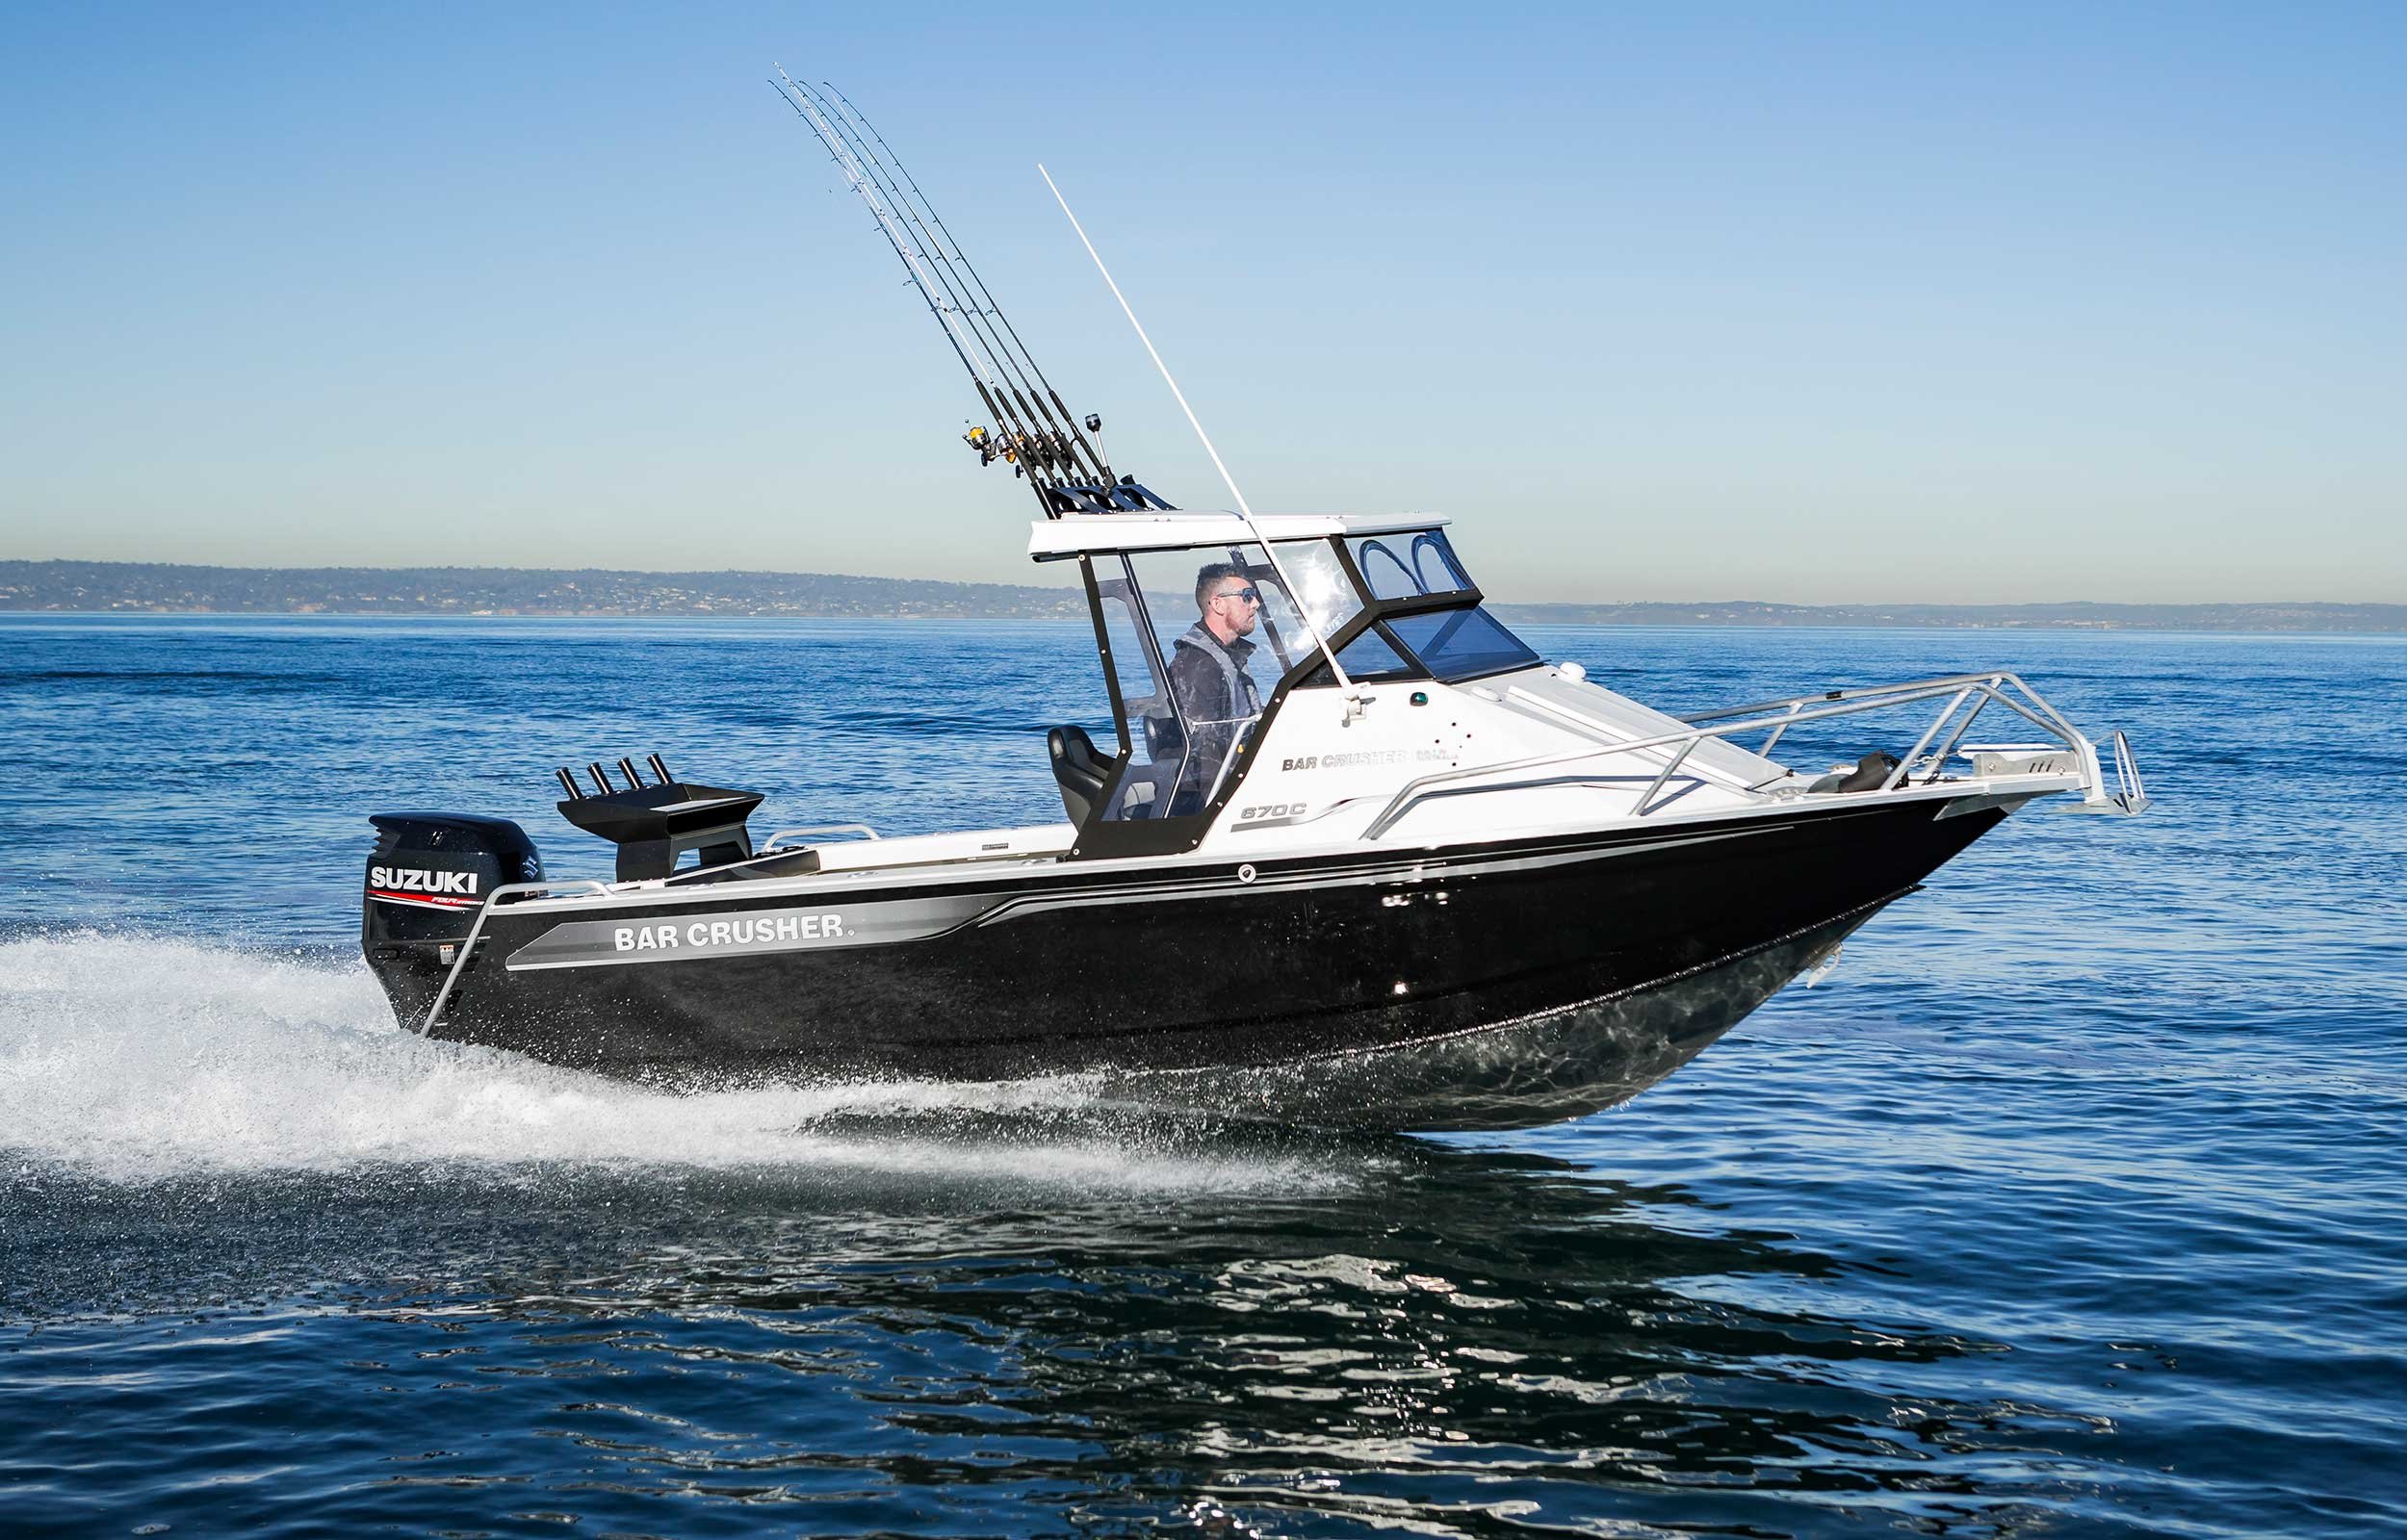 models-bar-crusher-670c-plate-aluminium-fishing-boat-2019-web-3